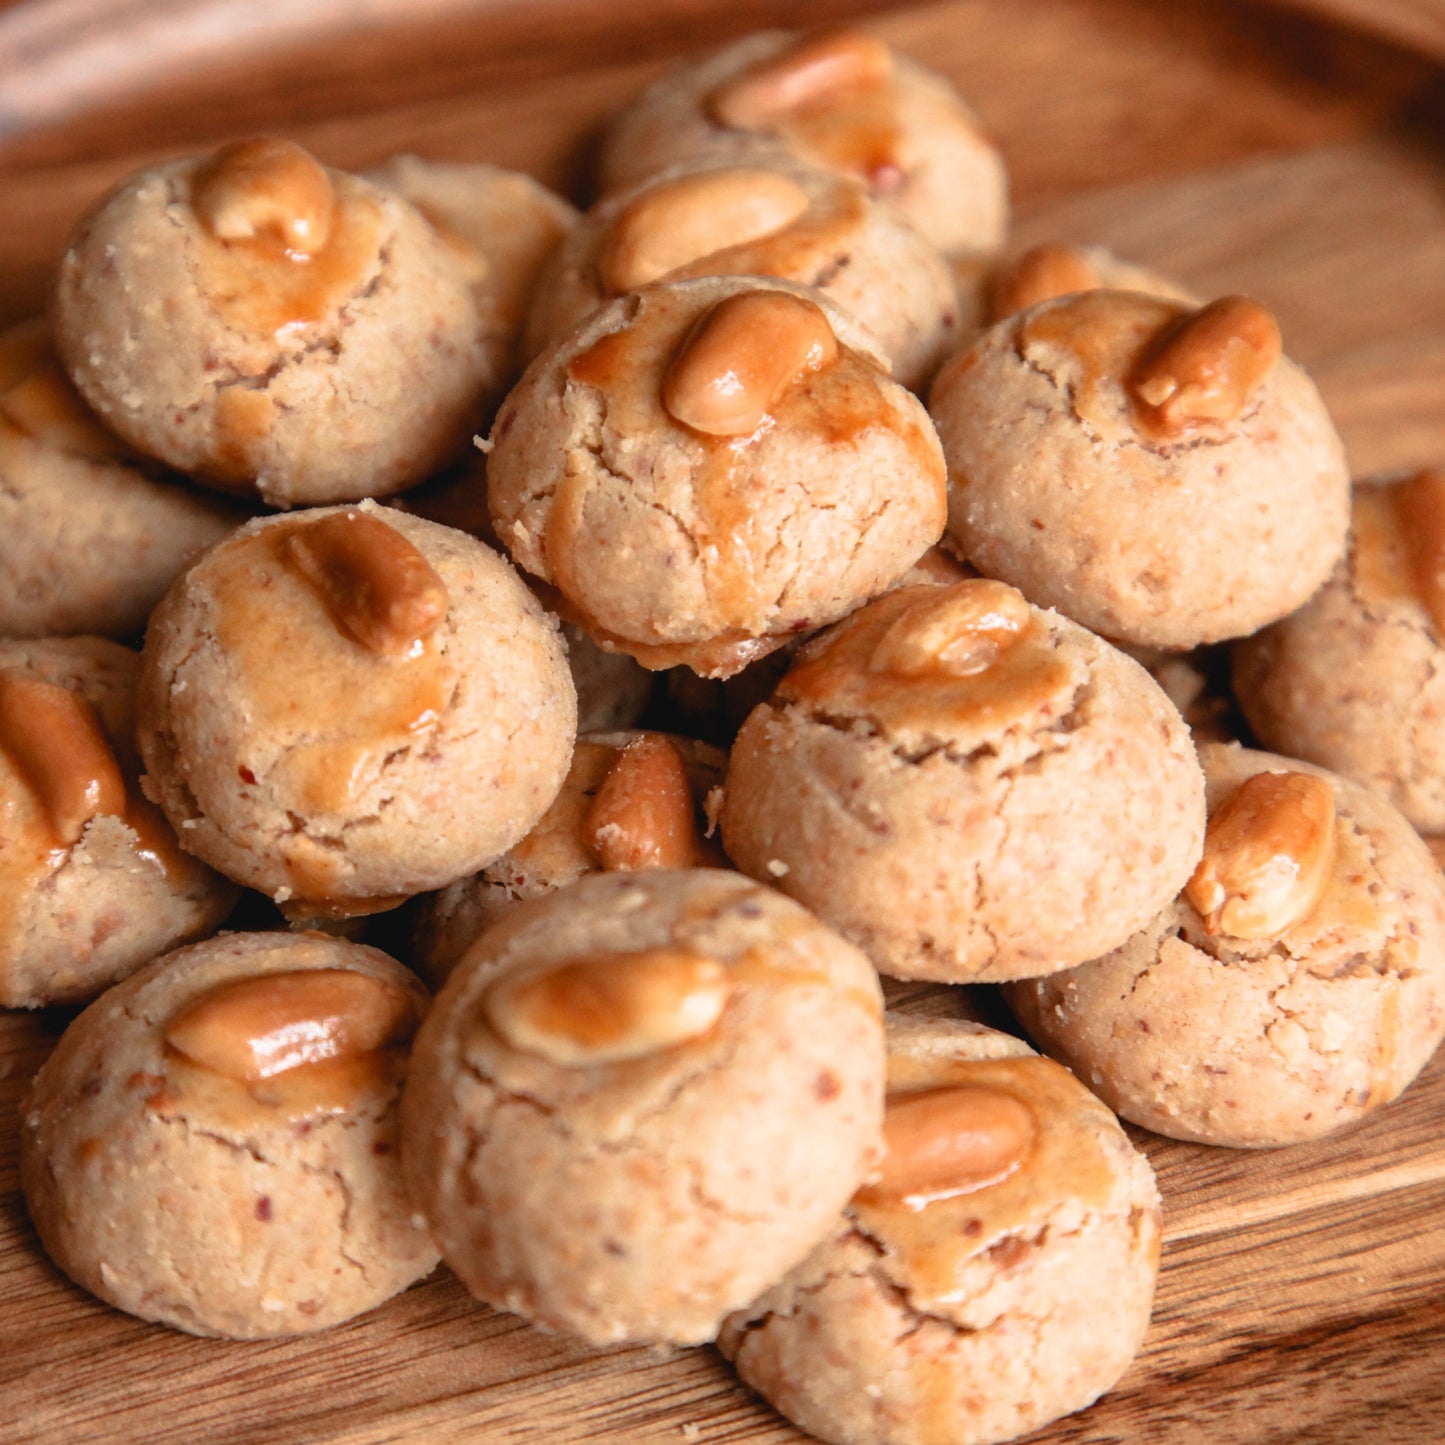 Peanut or Almond Cookies